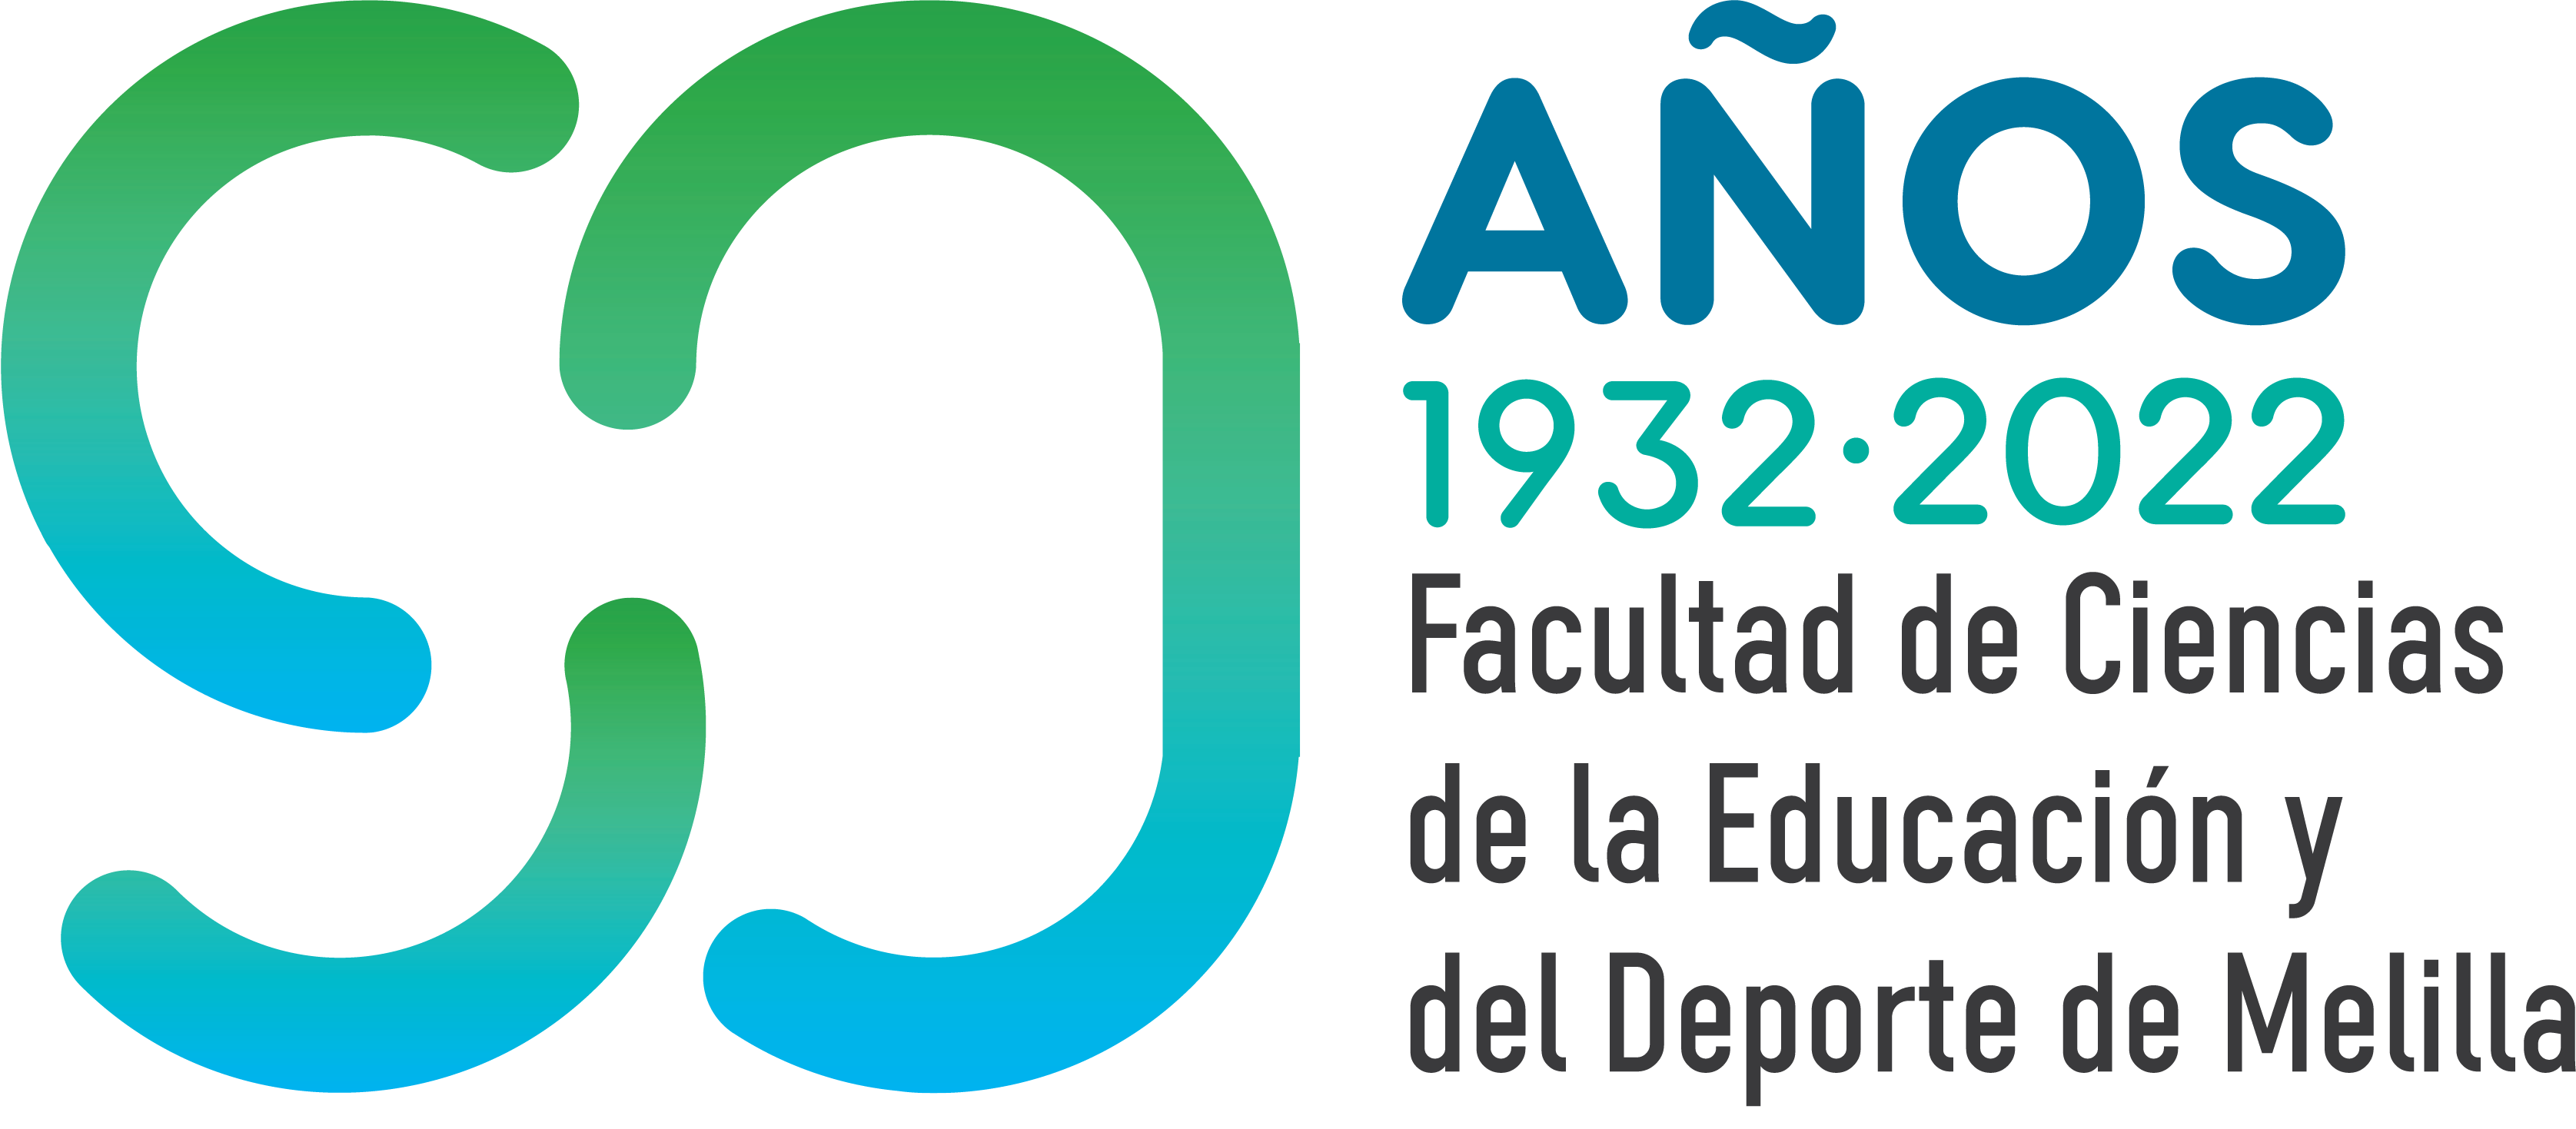 Logo del 90 aniversario de la Facultad